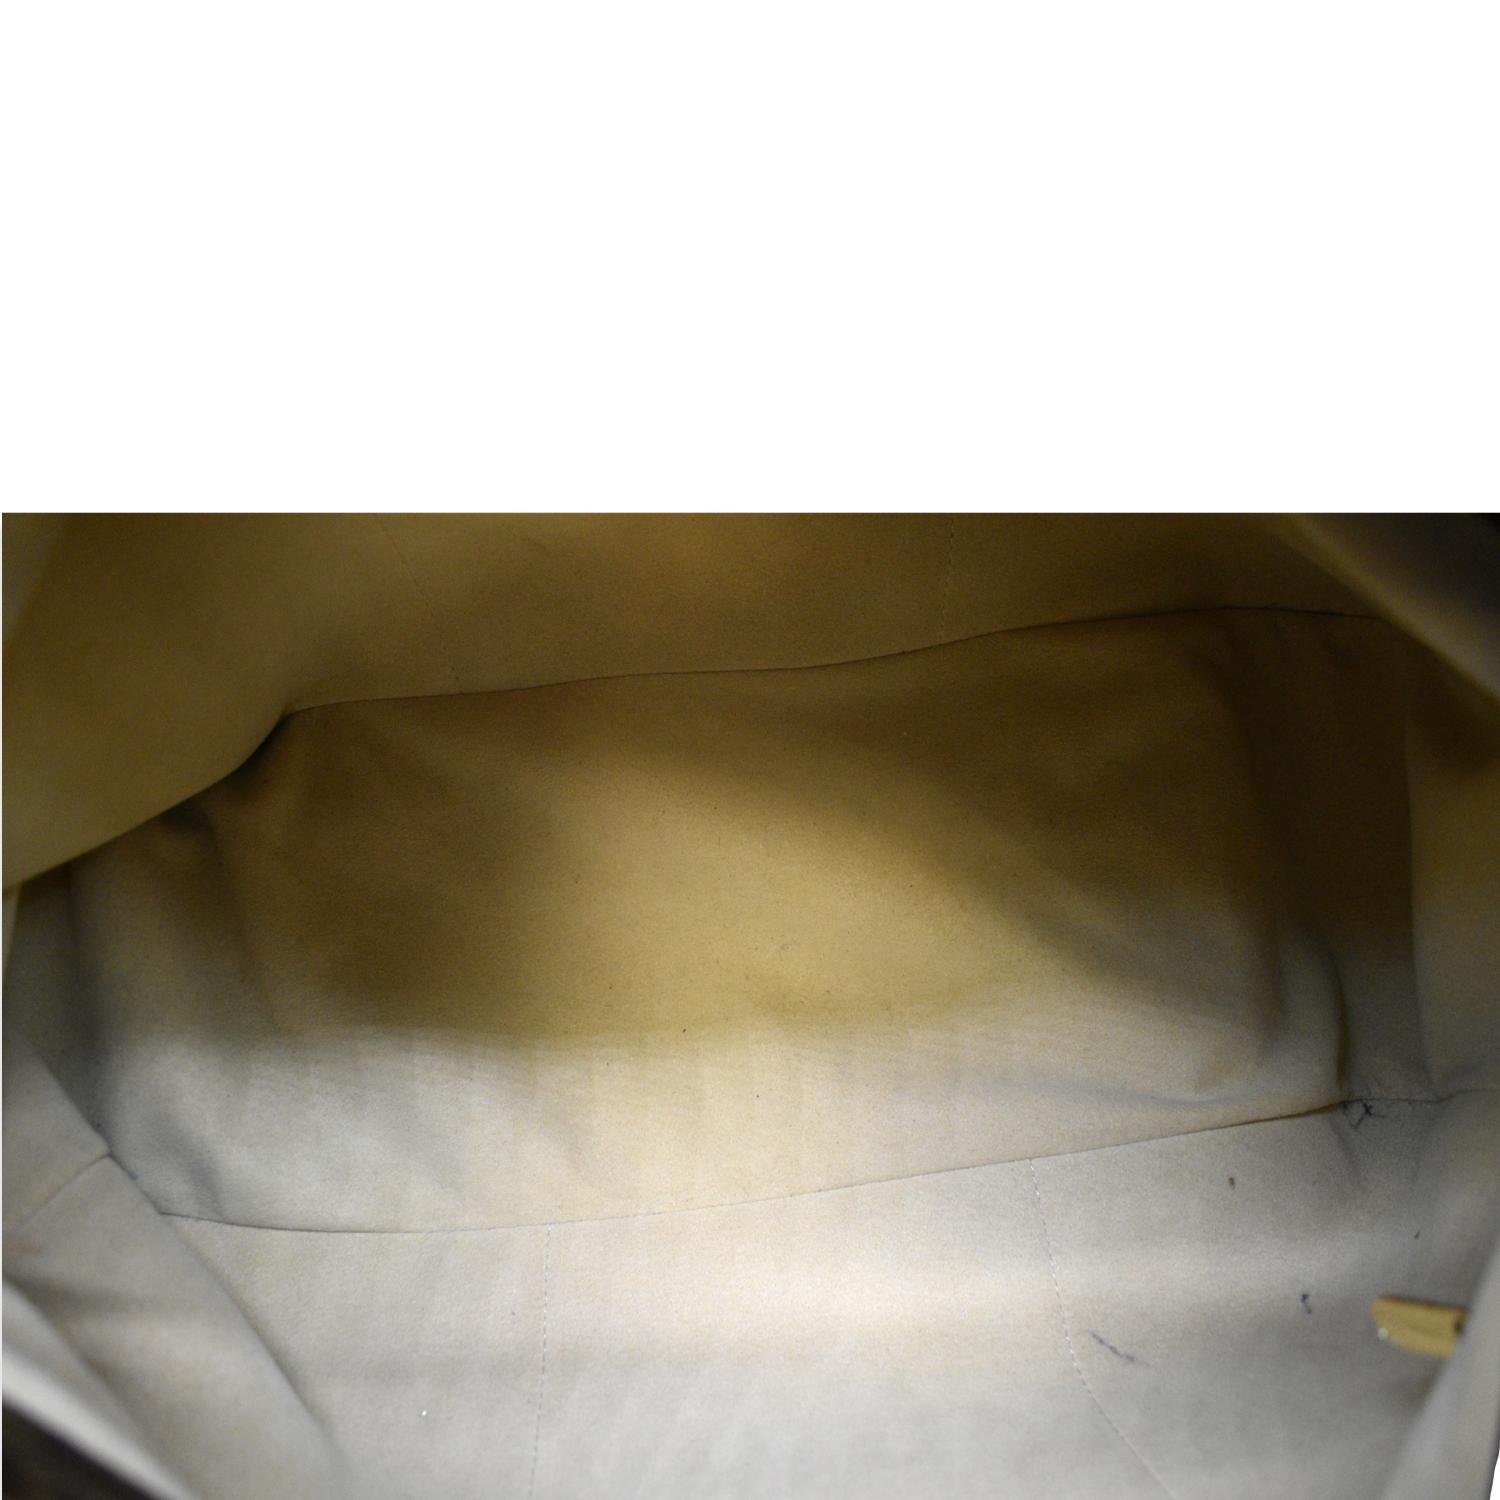 Artsy cloth handbag Louis Vuitton Brown in Fabric - 34383482